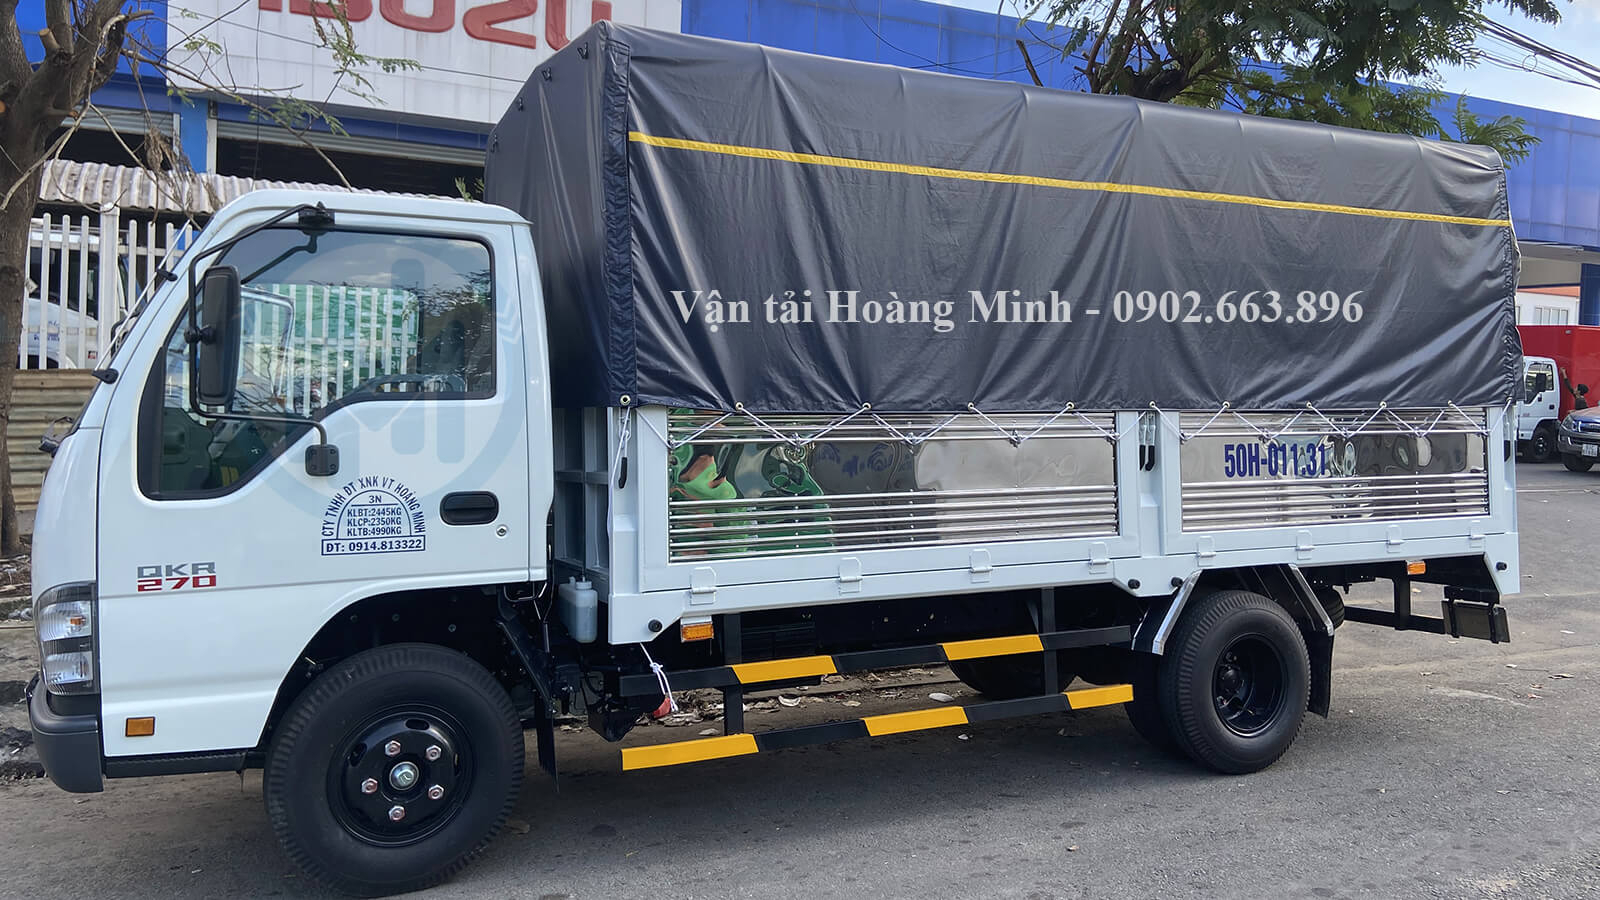 Phương thức đặt thuê xe tải chở hàng 3,5 tấn ở Vận tải Hoàng Minh